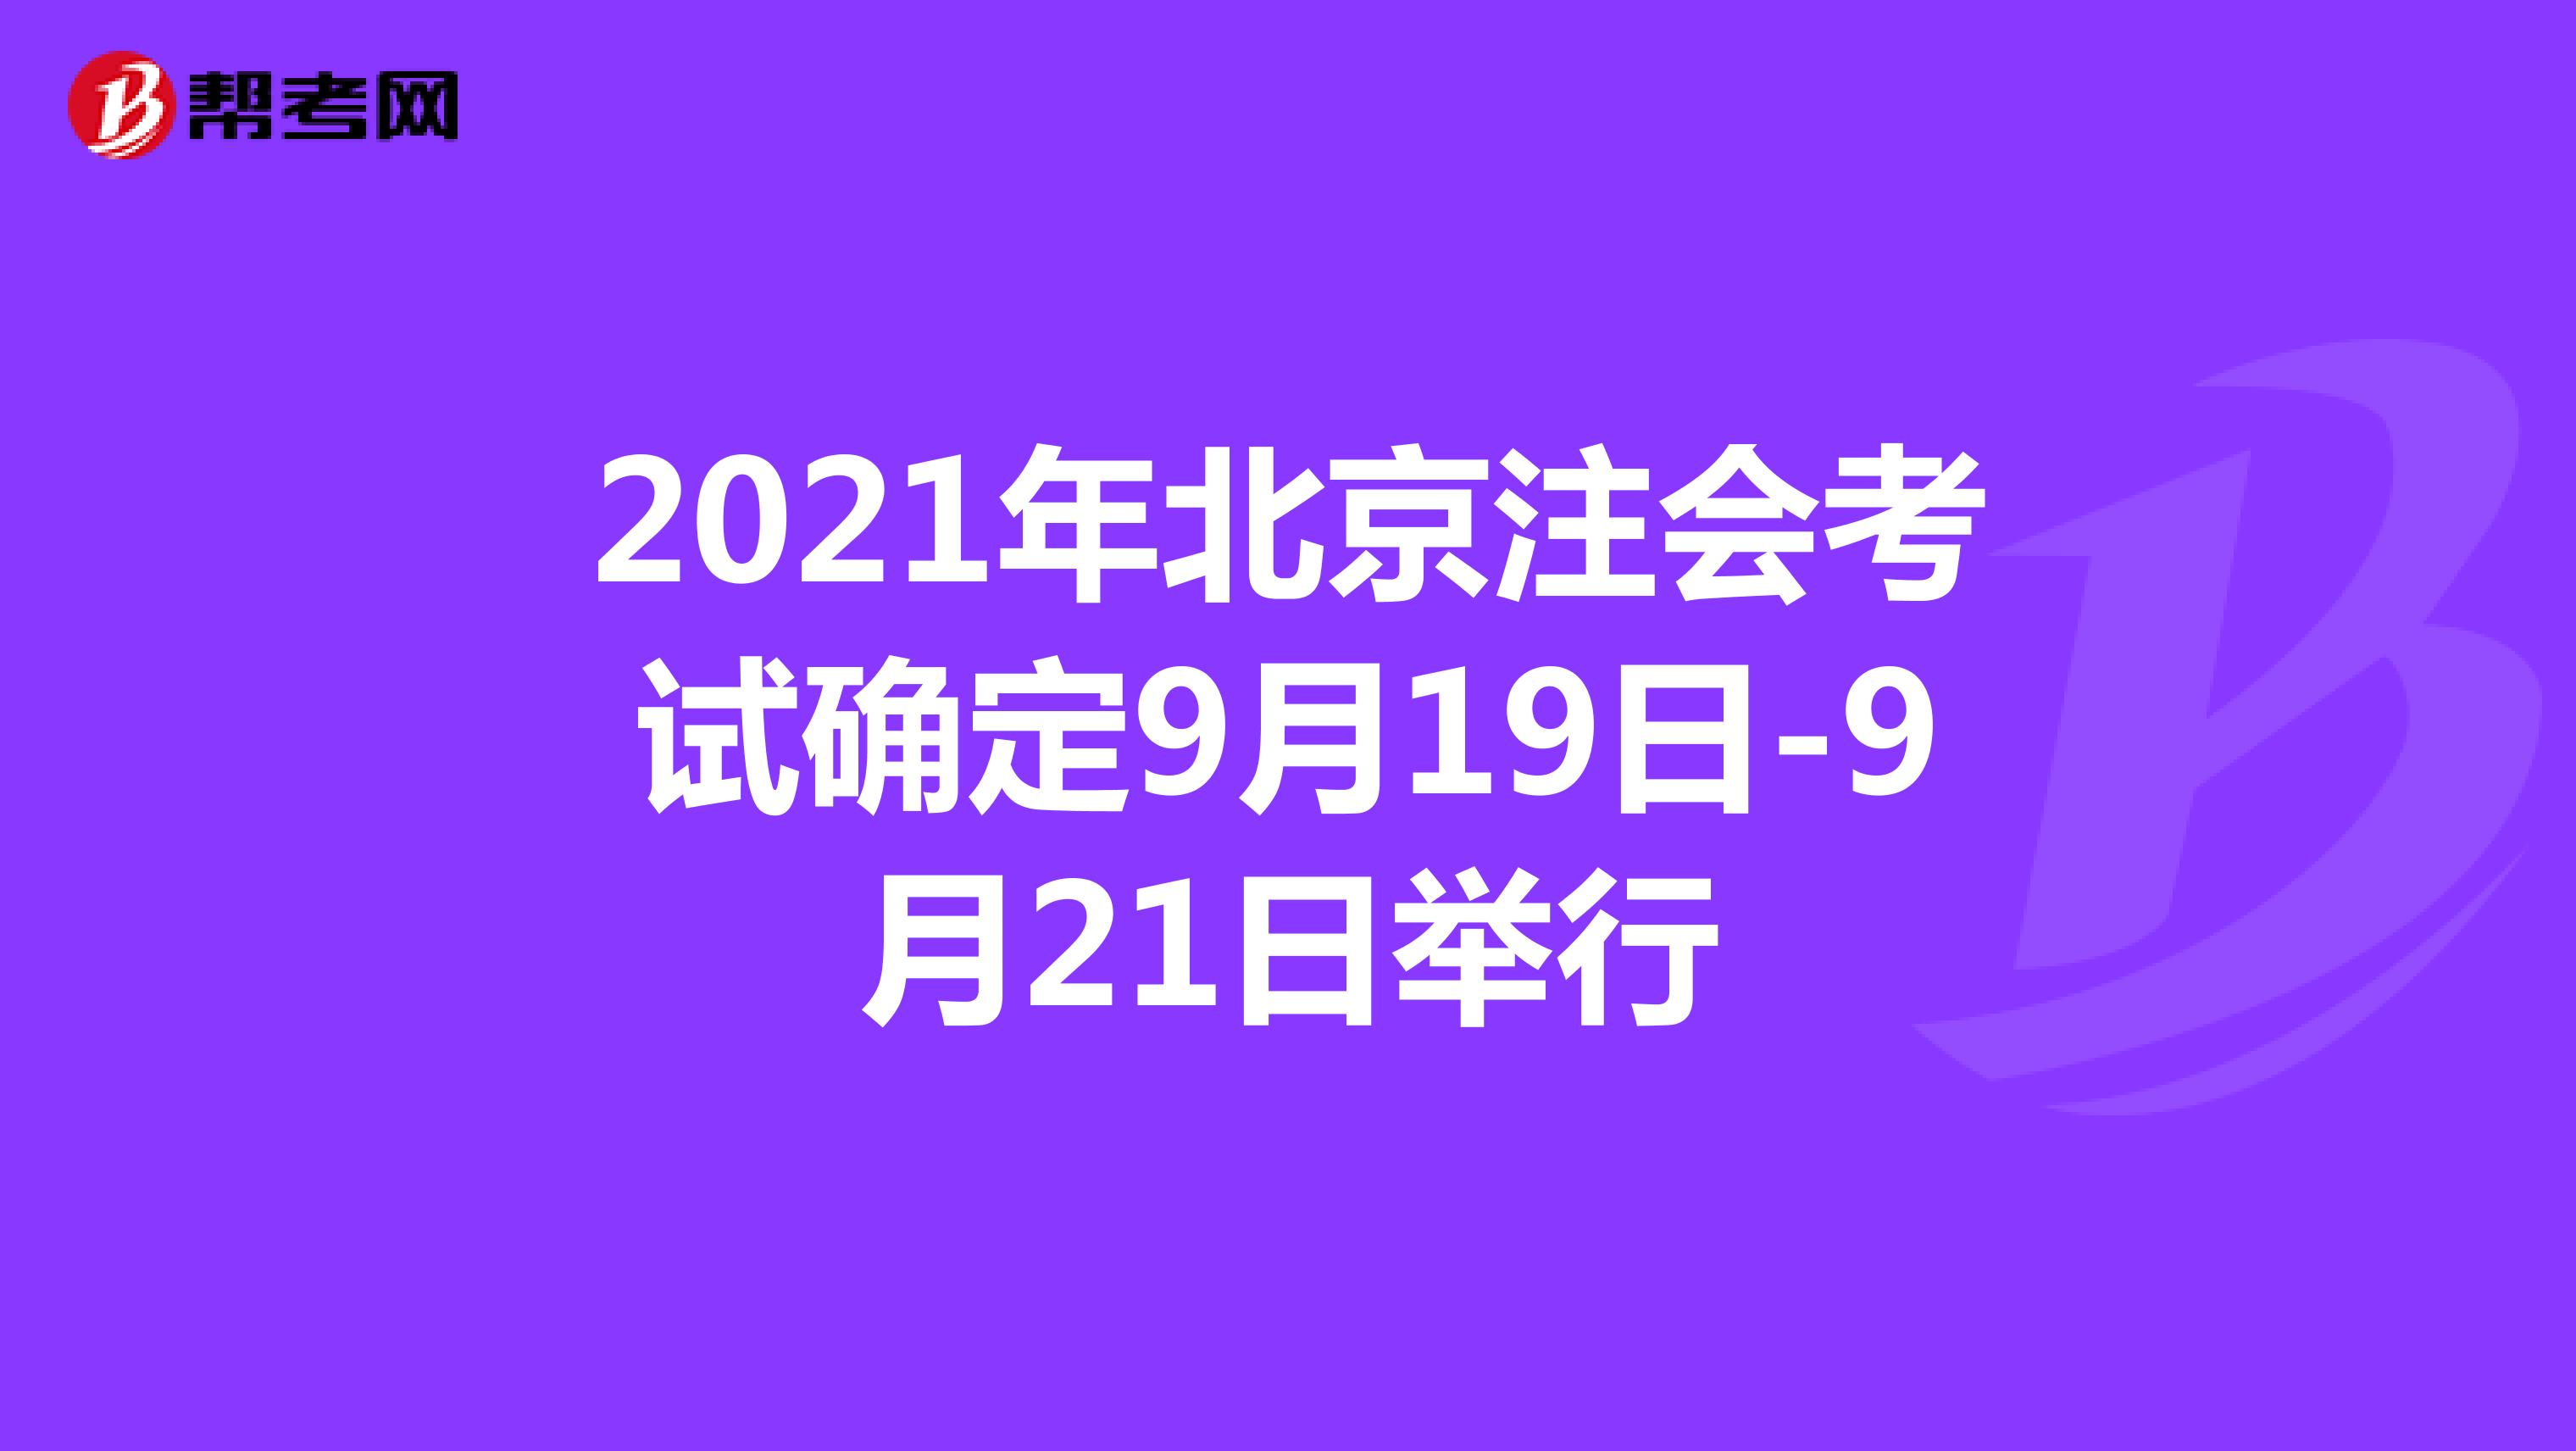 2021年北京注会考试确定9月19日-9月21日举行